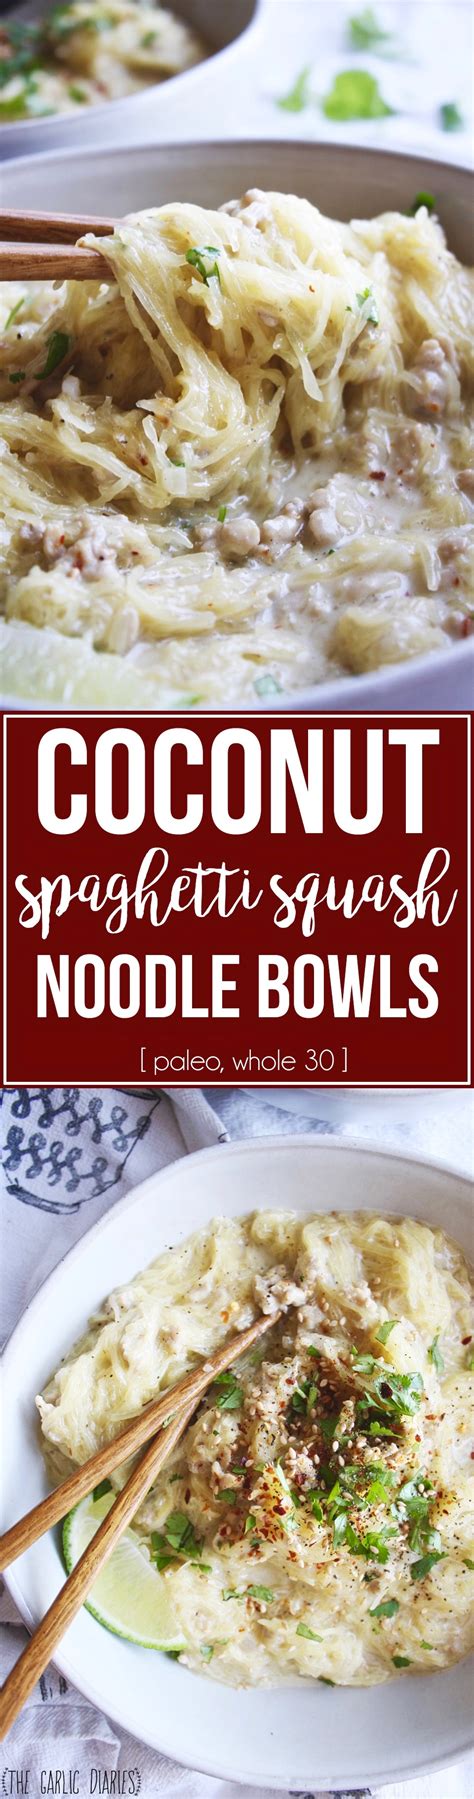 Coconut Spaghetti Squash Noodle Bowls